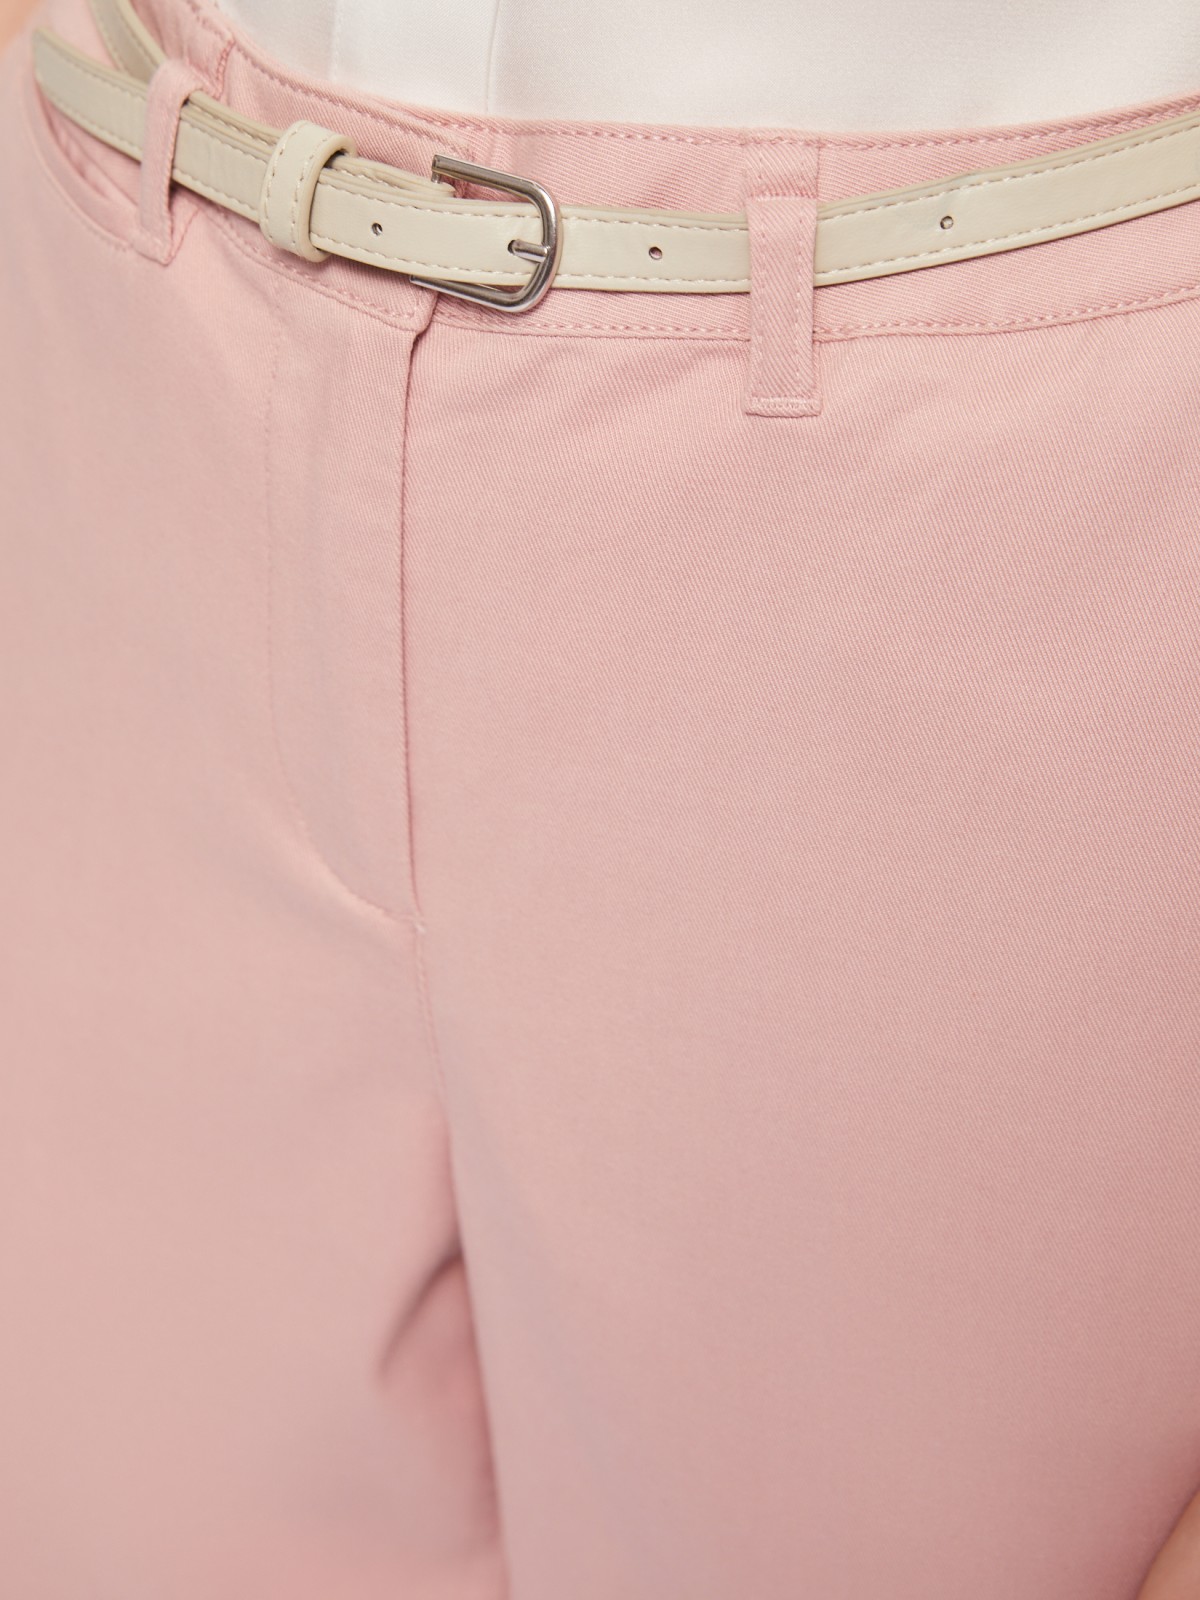 Офисные брюки-чинос со стрелками и ремнём zolla 02422736F043, цвет розовый, размер S - фото 4